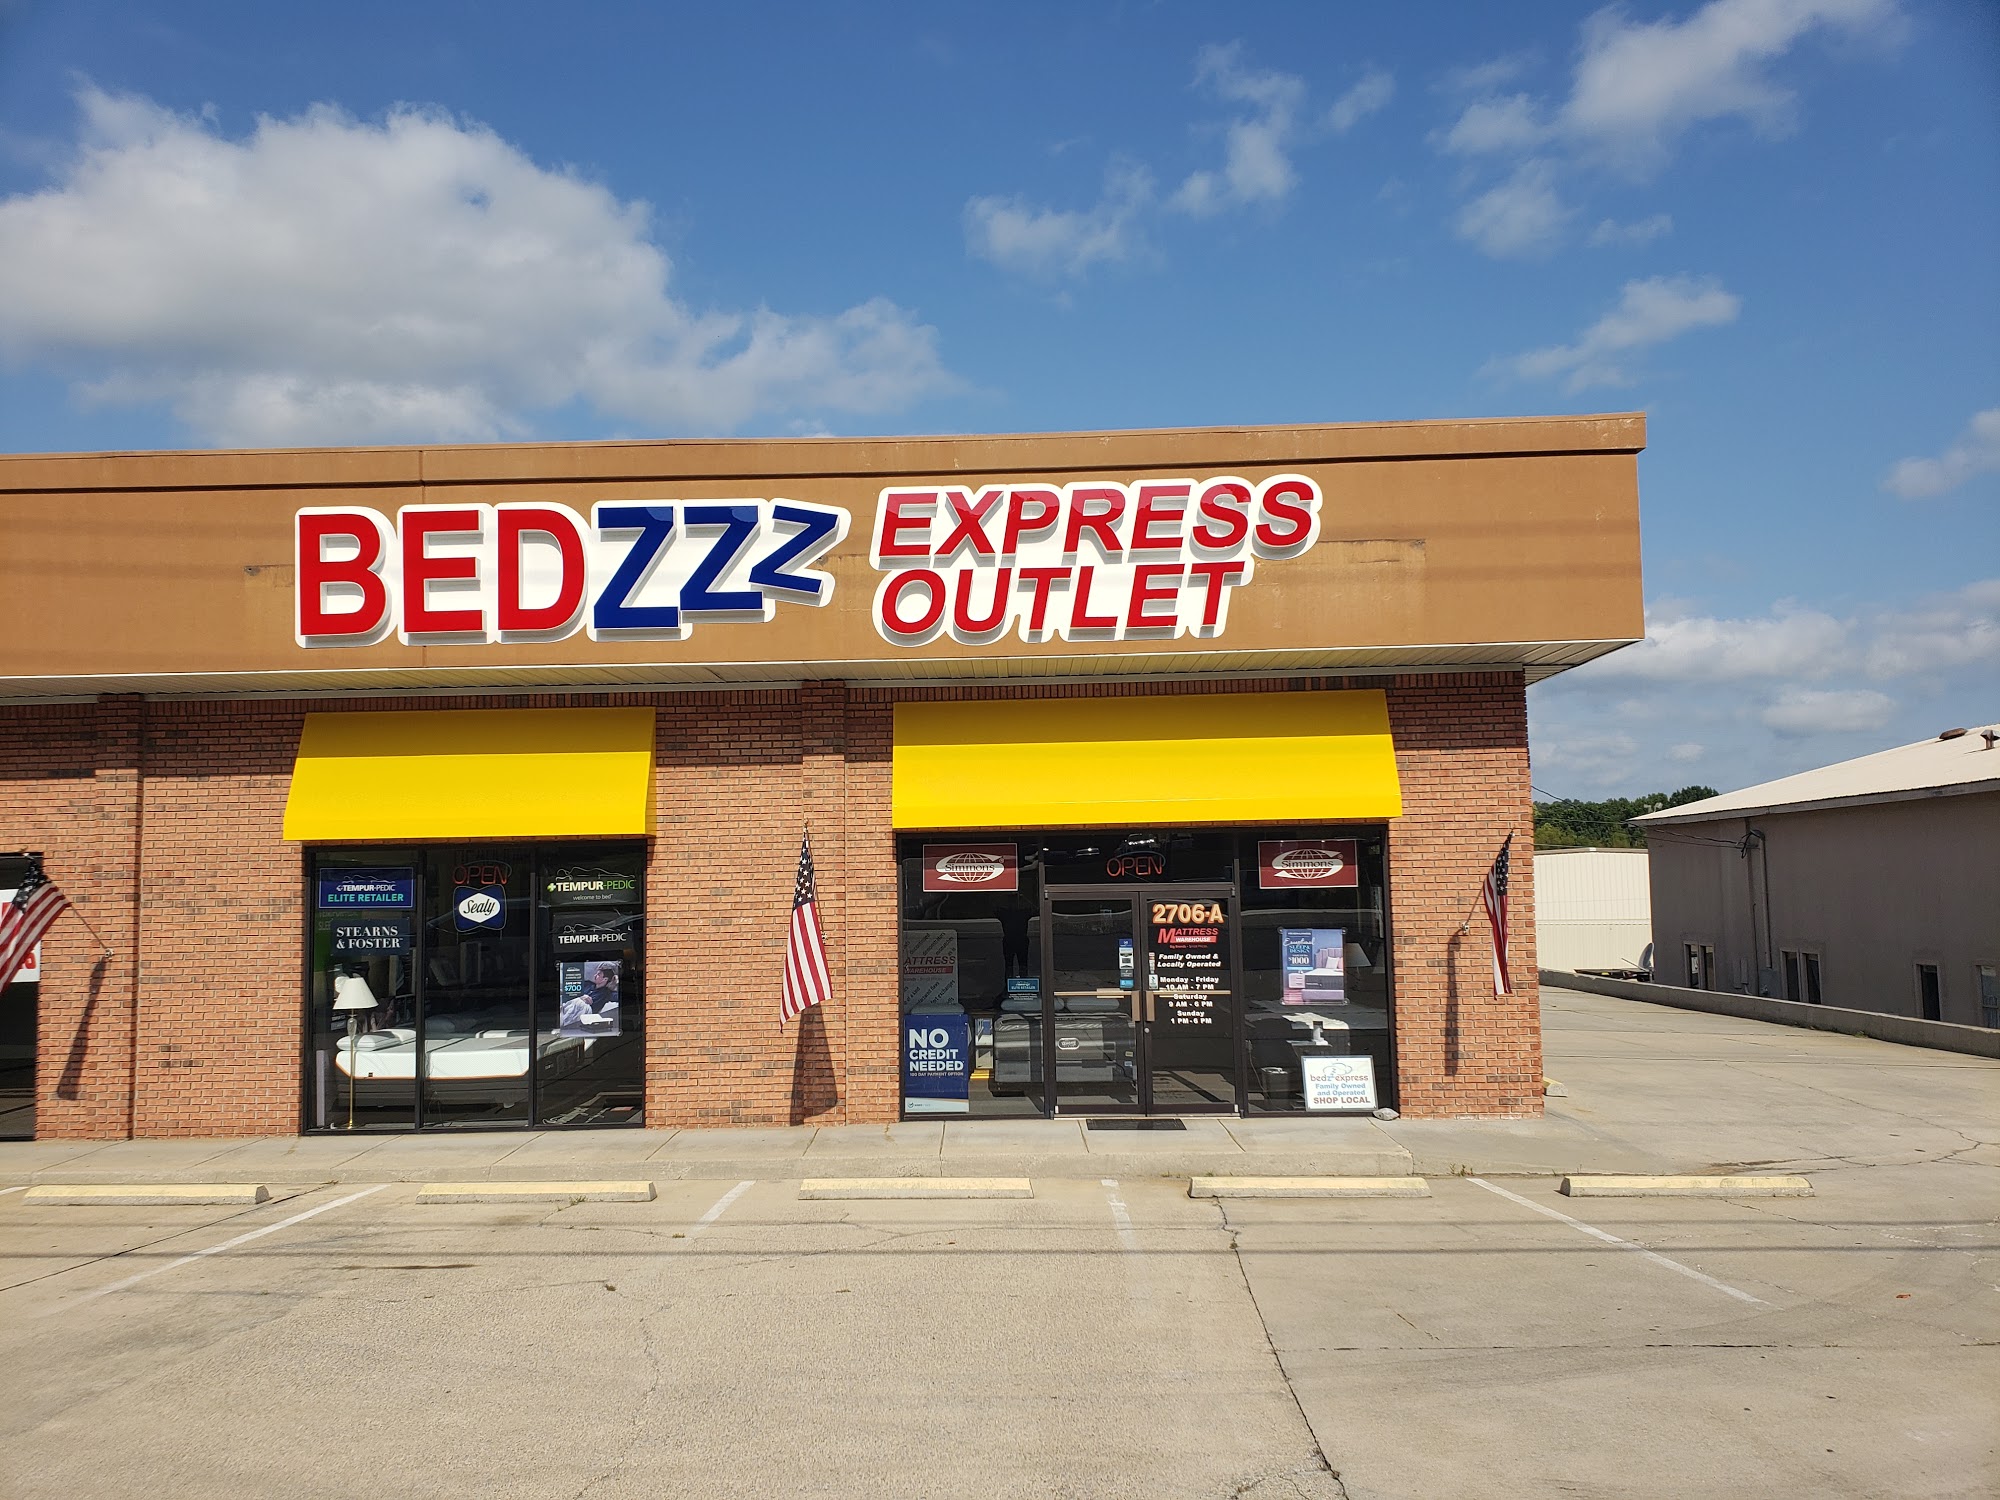 Bedzzz Express Outlet